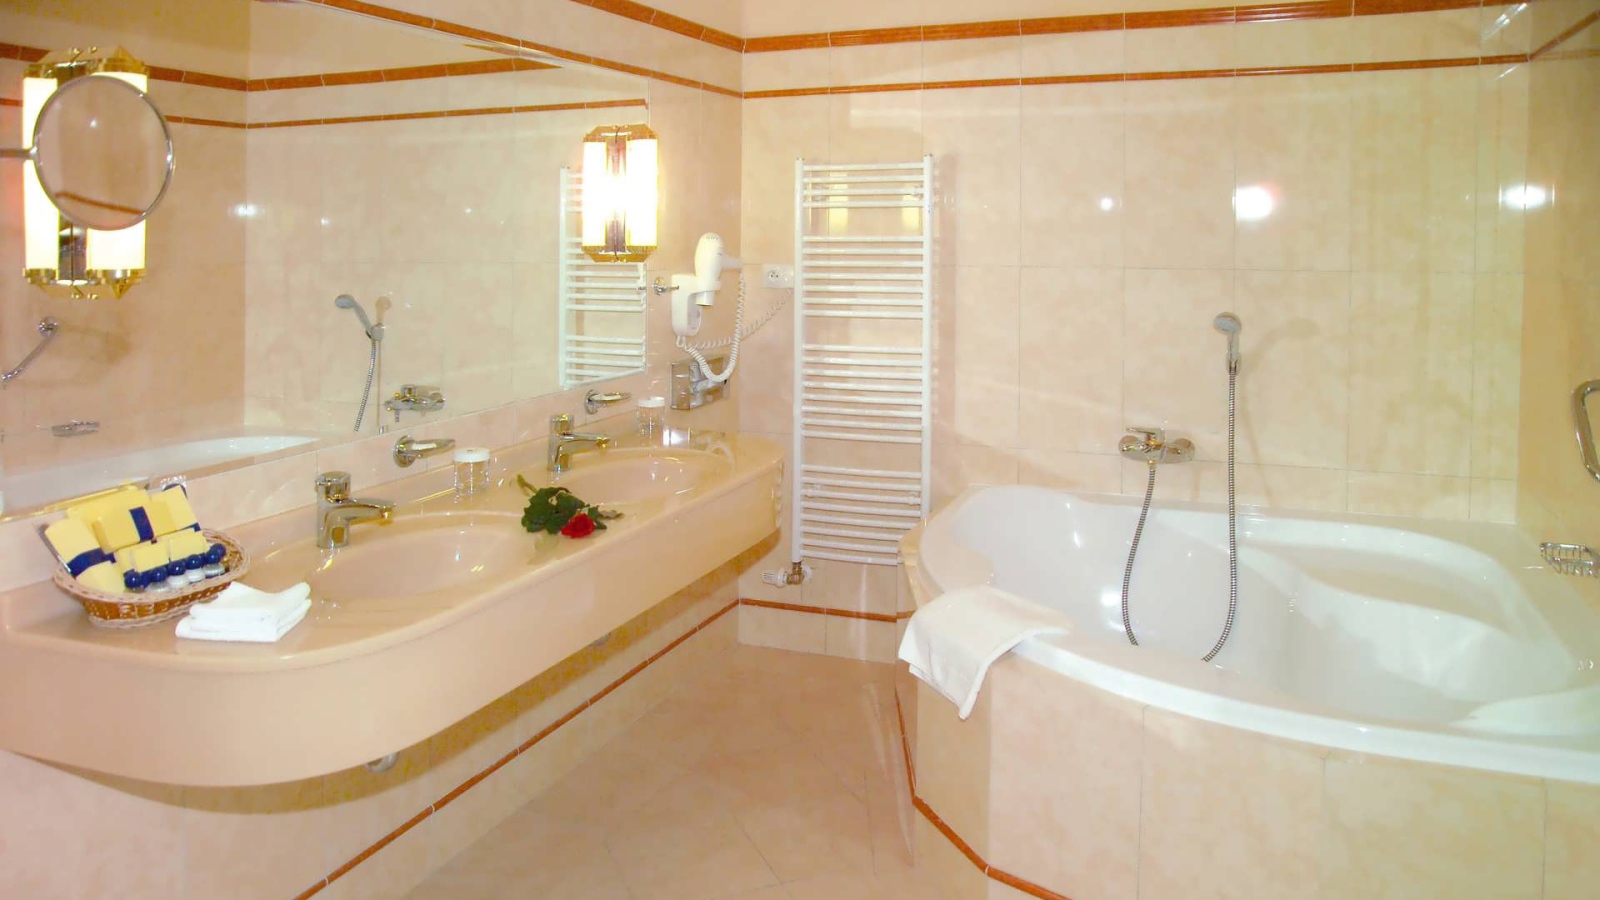 Interior creamy bathroom